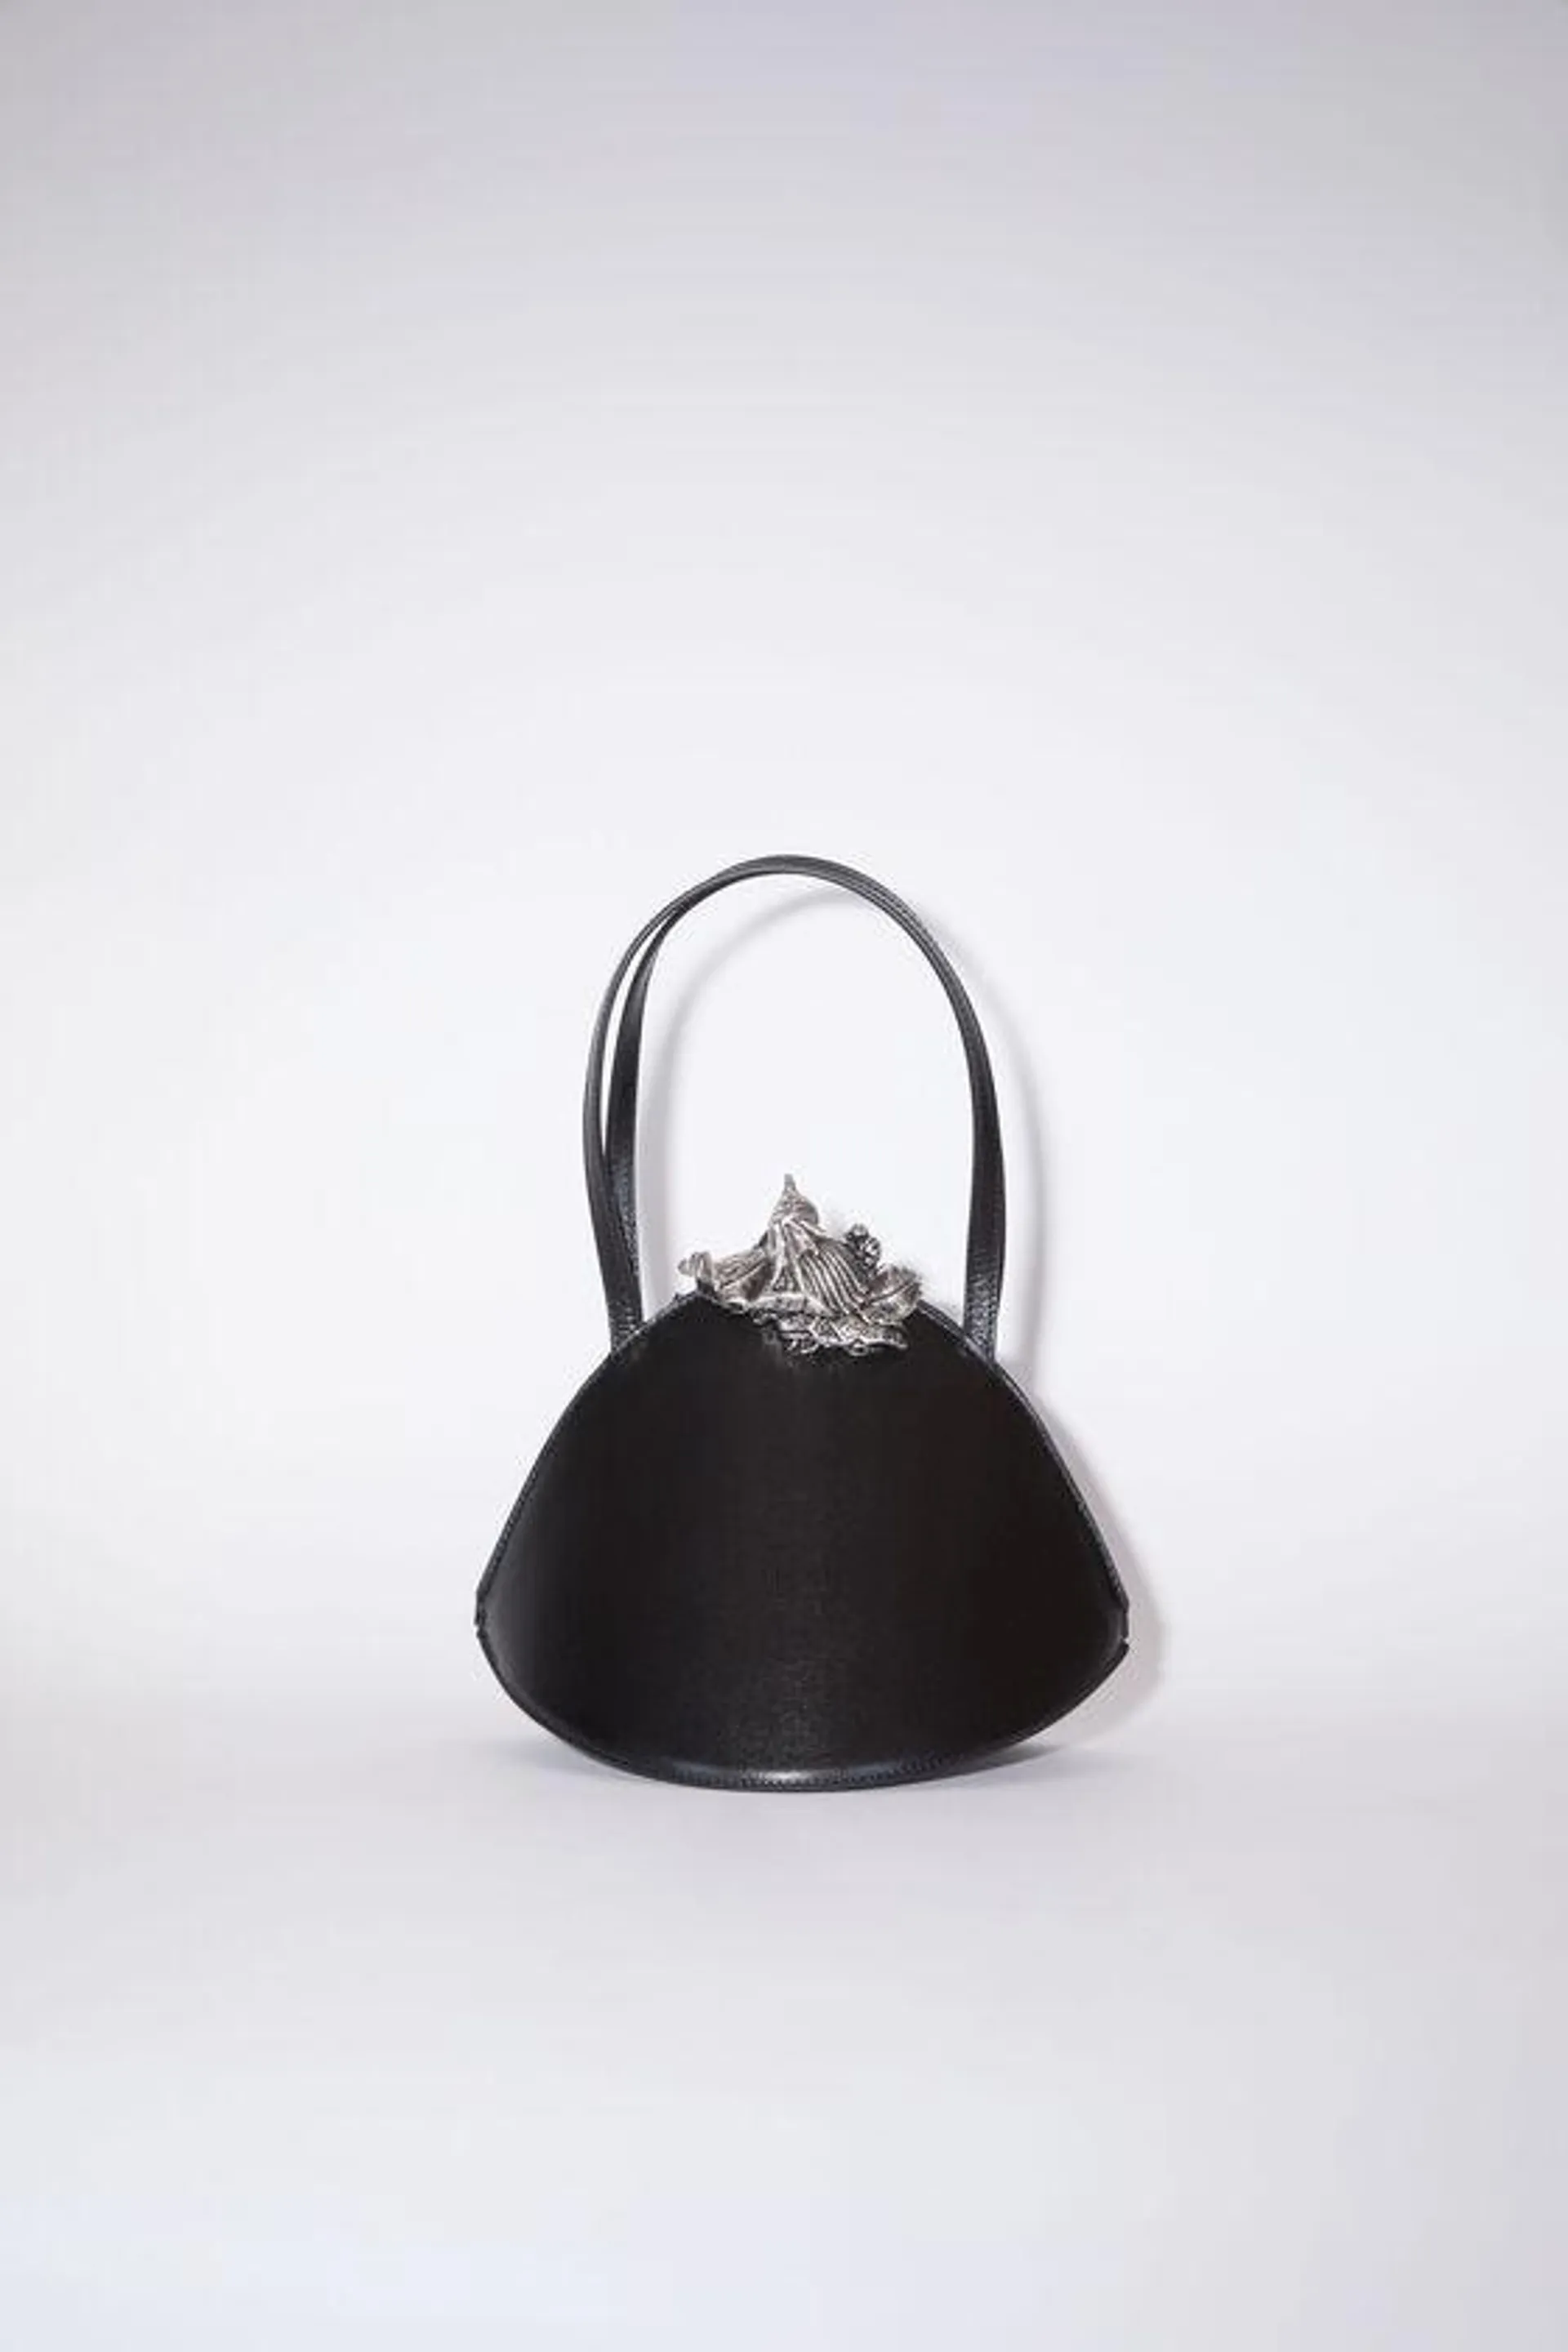 Jewel handbag